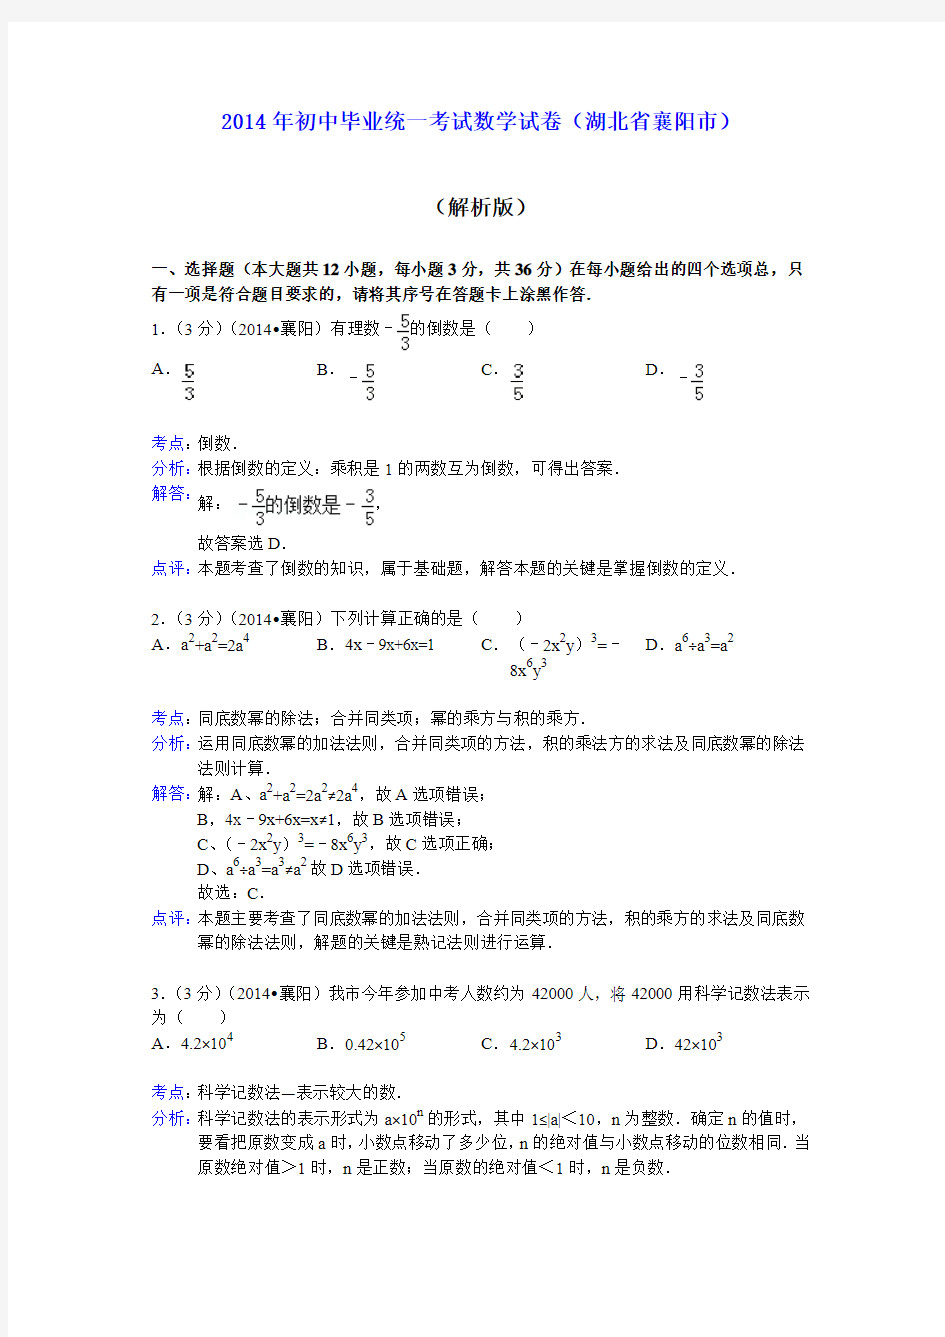 2014年初中毕业统一考试数学试卷(湖北省襄阳市)(解析版)